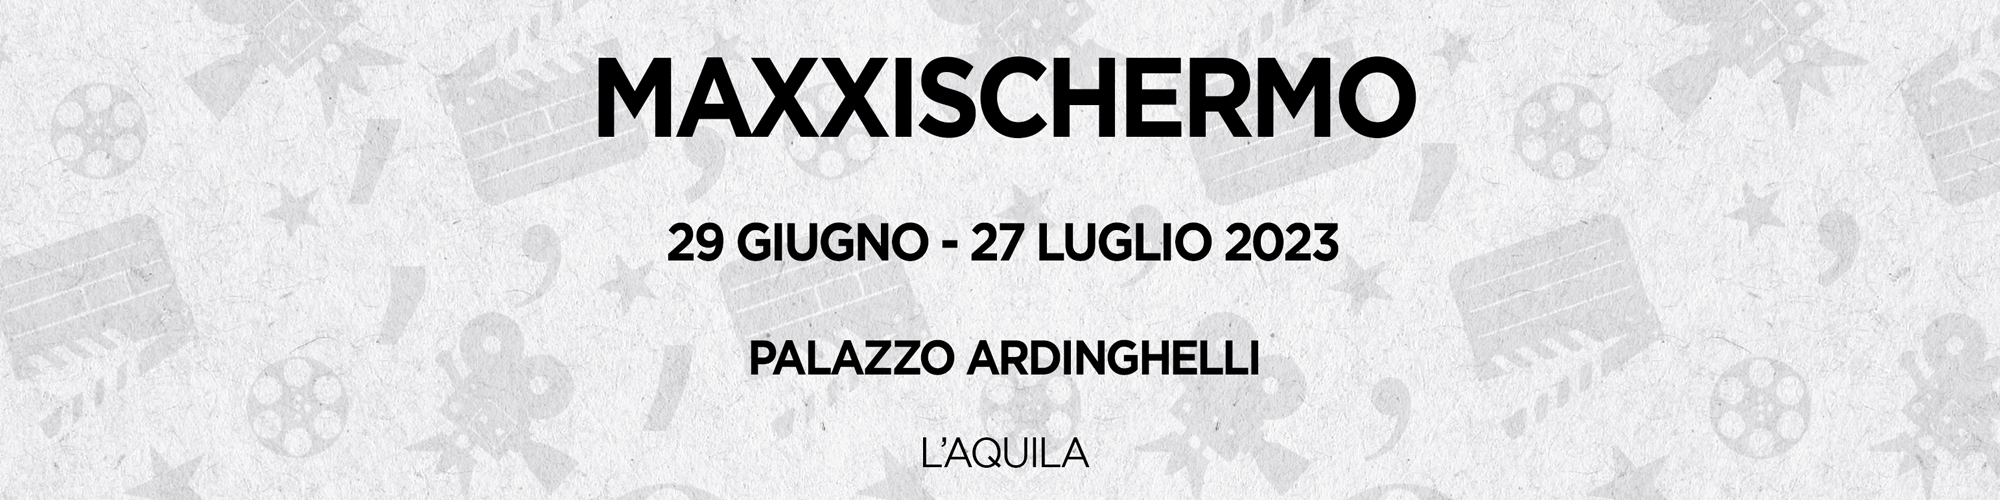 header-rassegna-maxxischermo-laquilafilmfestival-2023-aggiornata